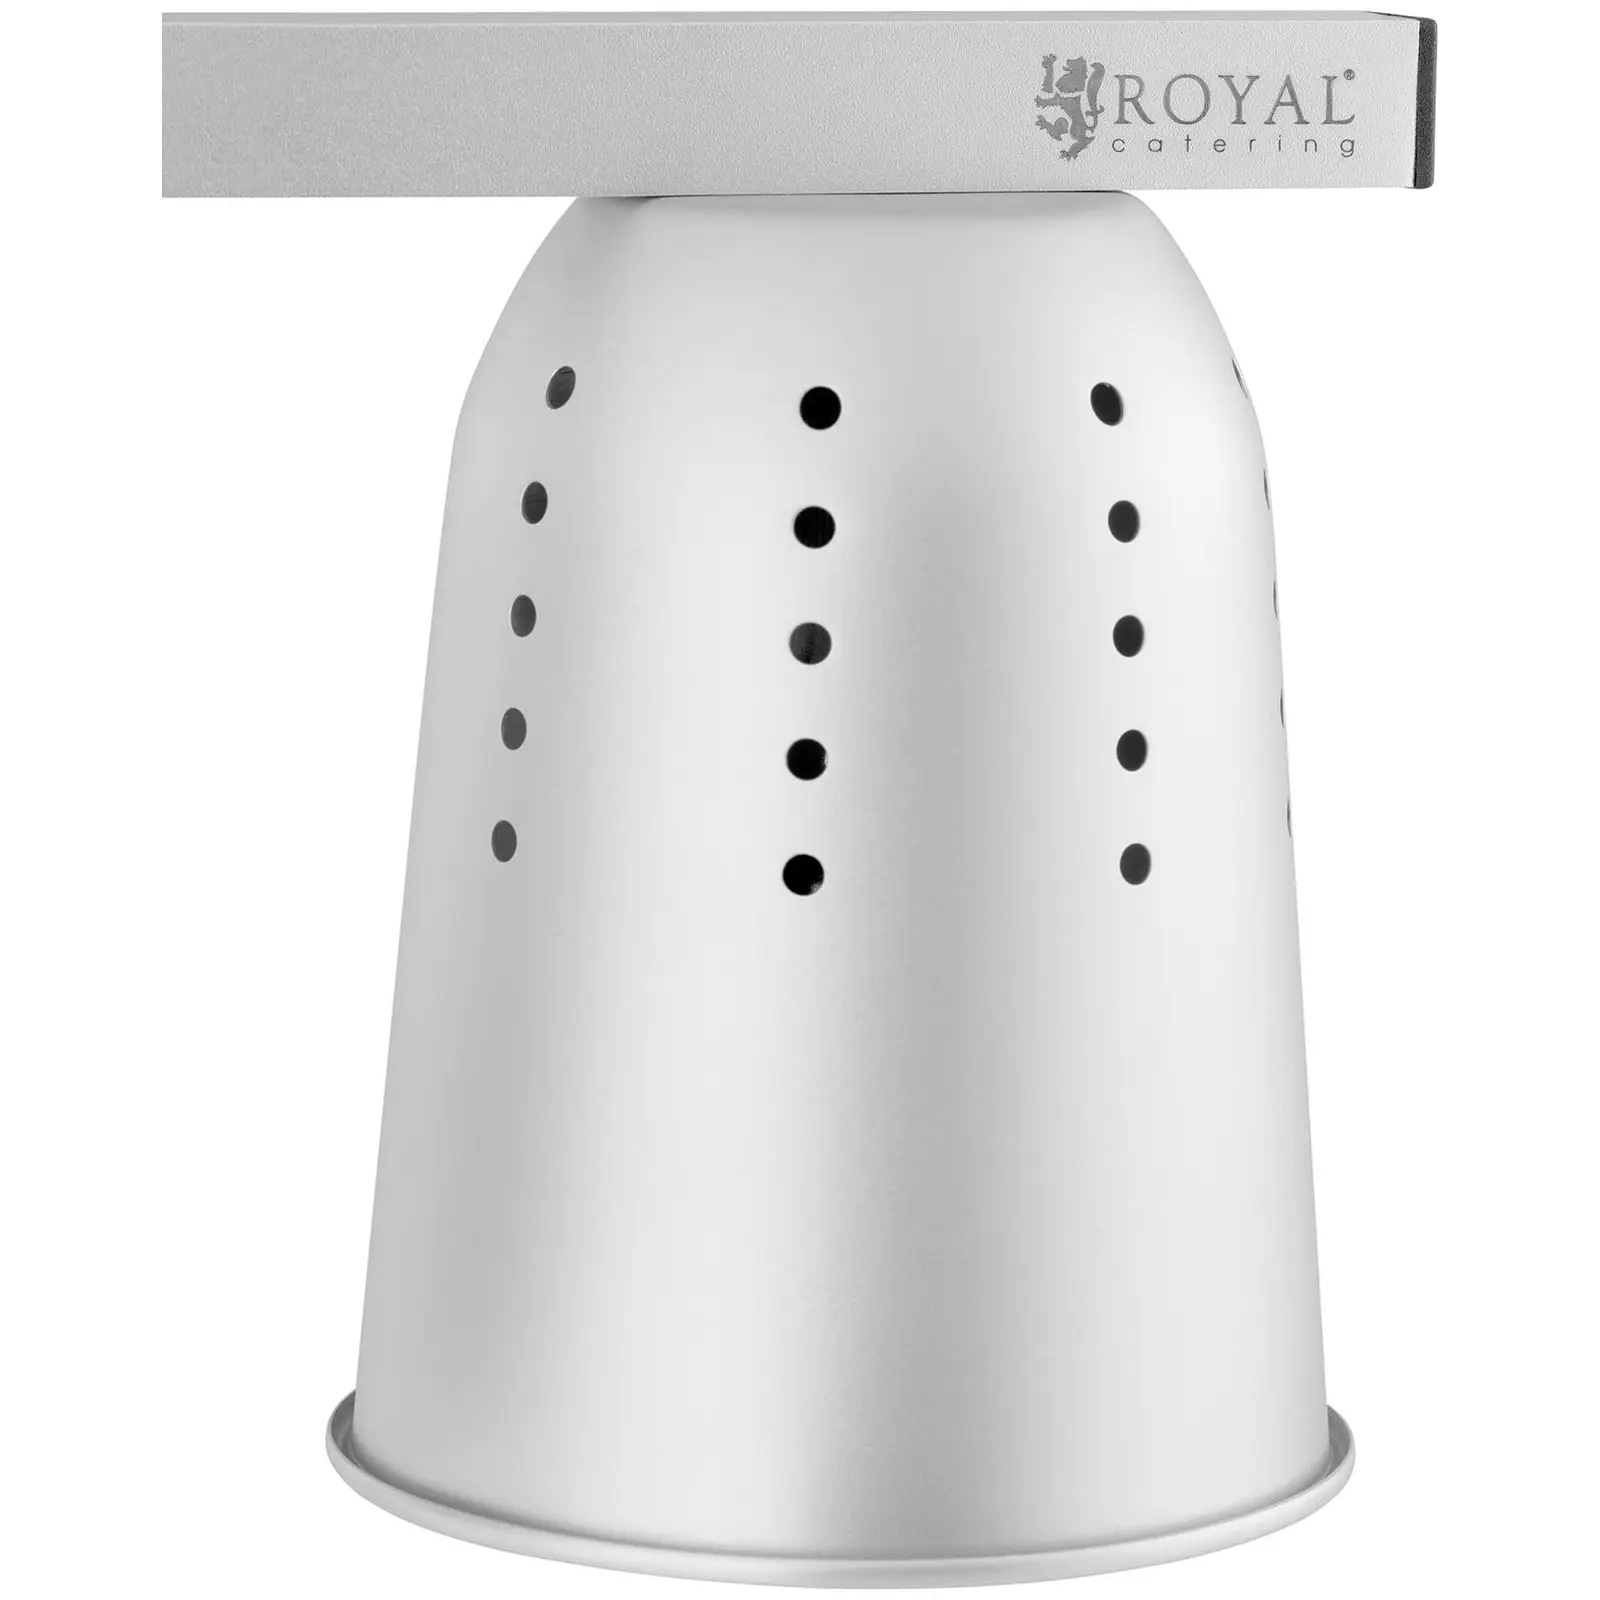 Lampa grzewcza do potraw - regulowana wysokość - Royal Catering - 2 żarówki - aluminium